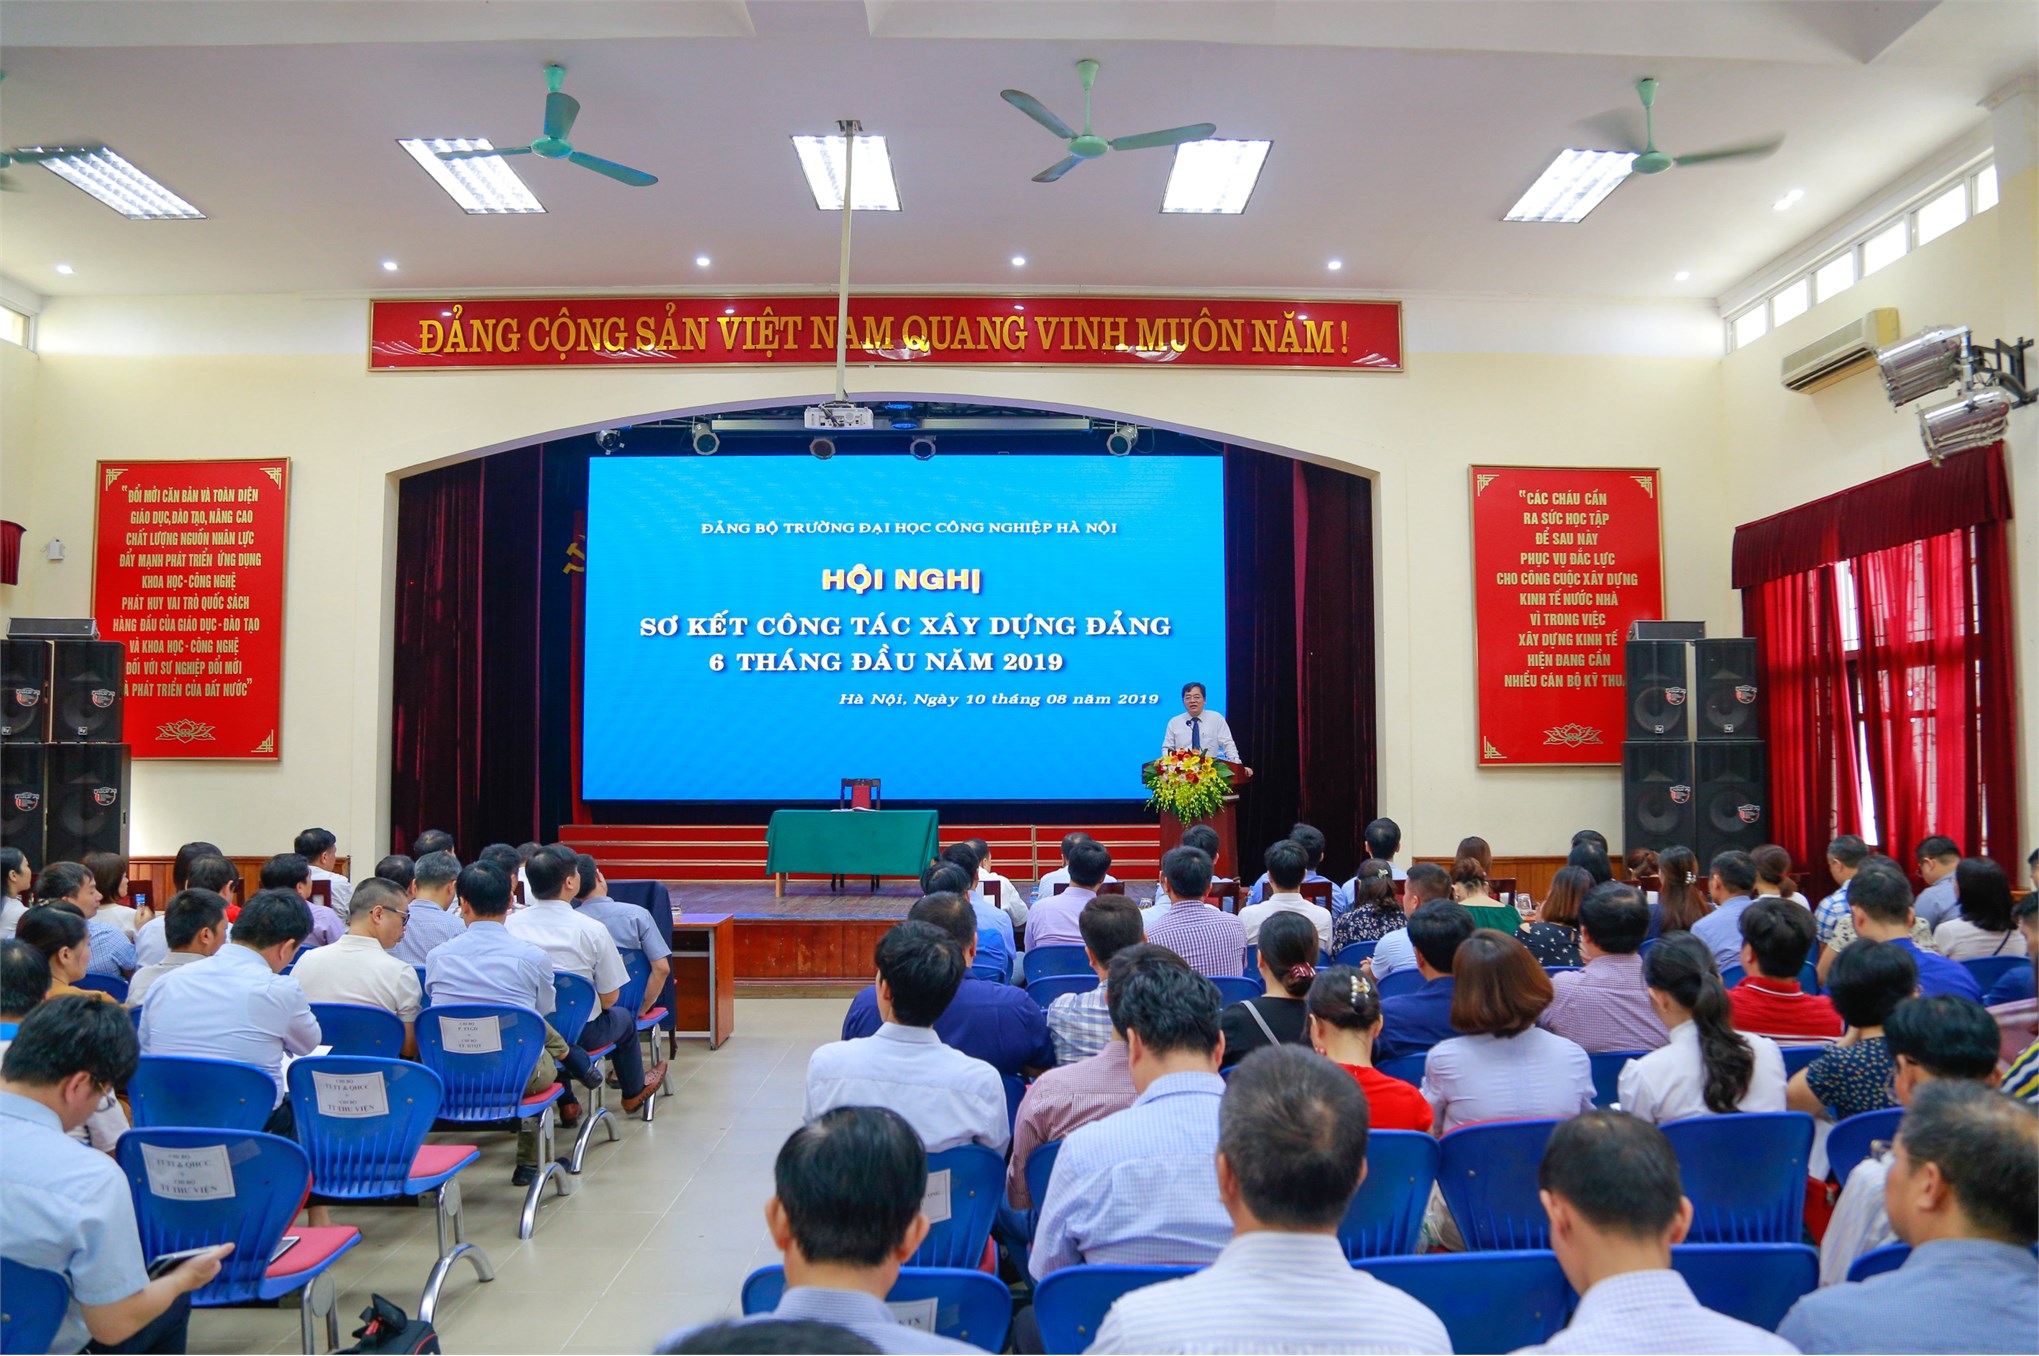 Đảng ủy Trường Đại học Công nghiệp Hà Nội sơ kết 6 tháng đầu năm 2019